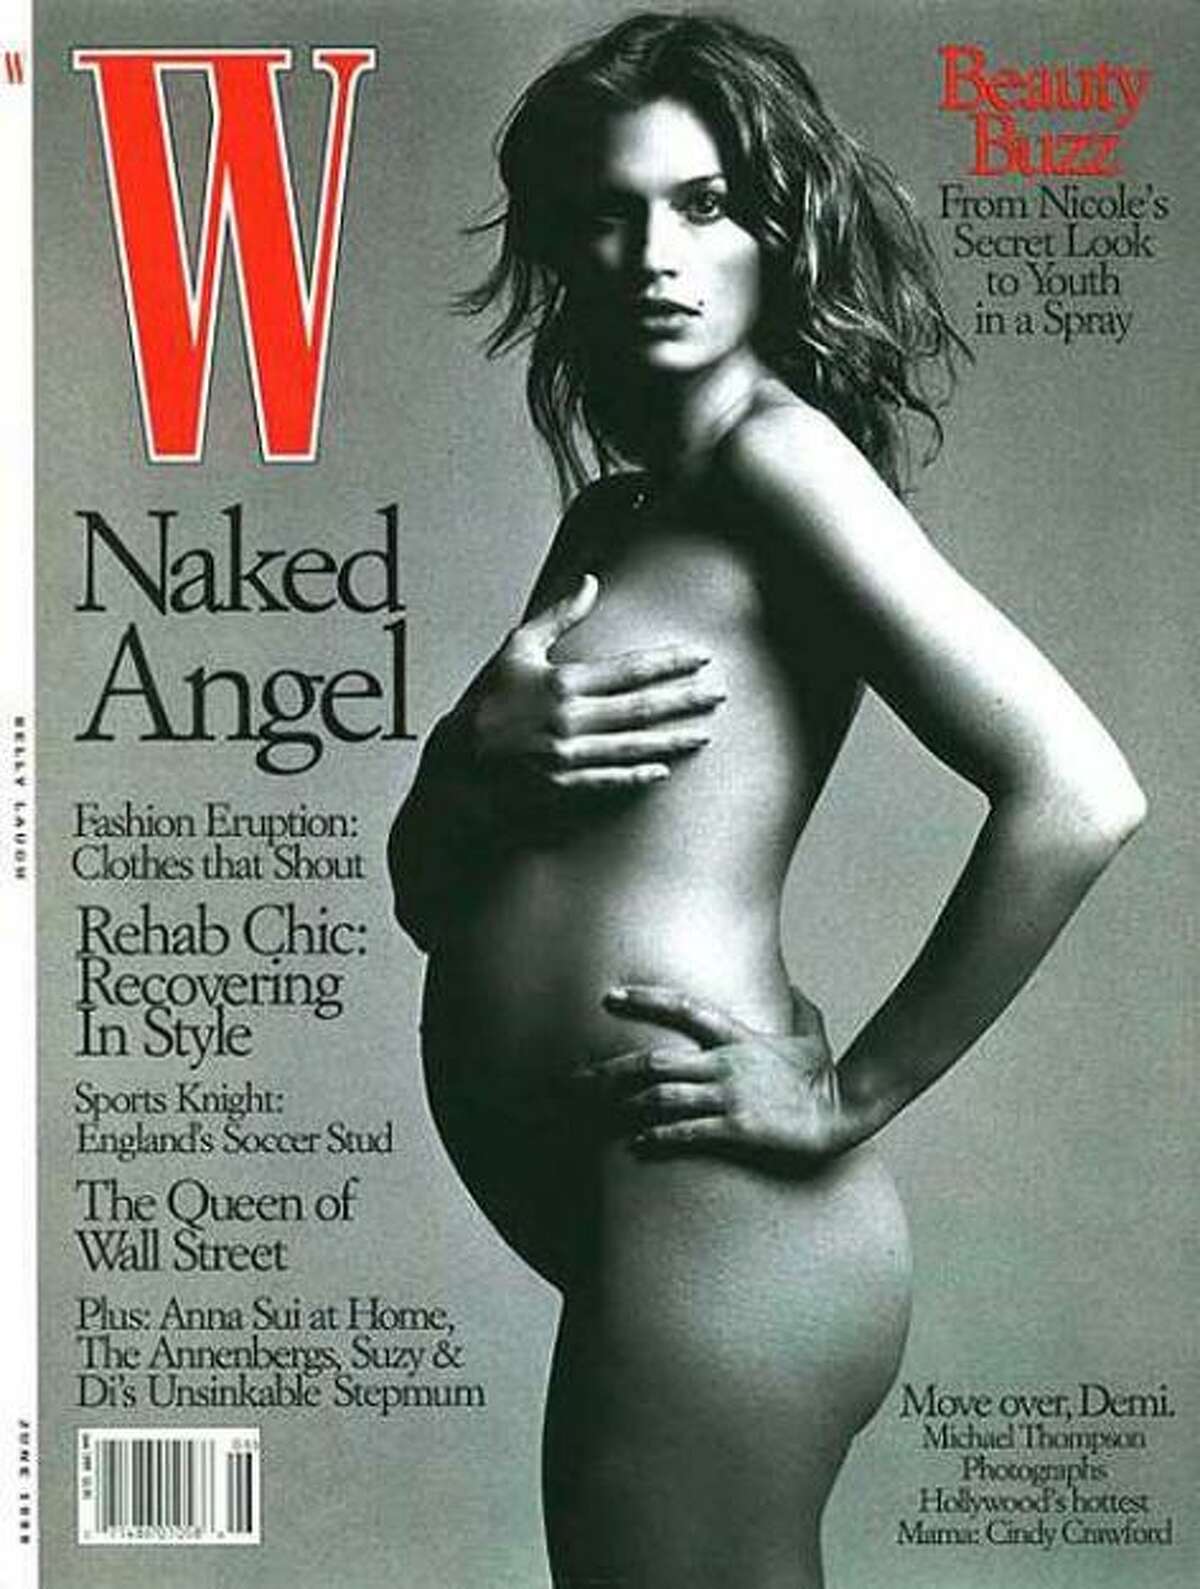 7 Months Pregnant Nude - Pregnant Kourtney Kardashian poses nude for DuJour magazine